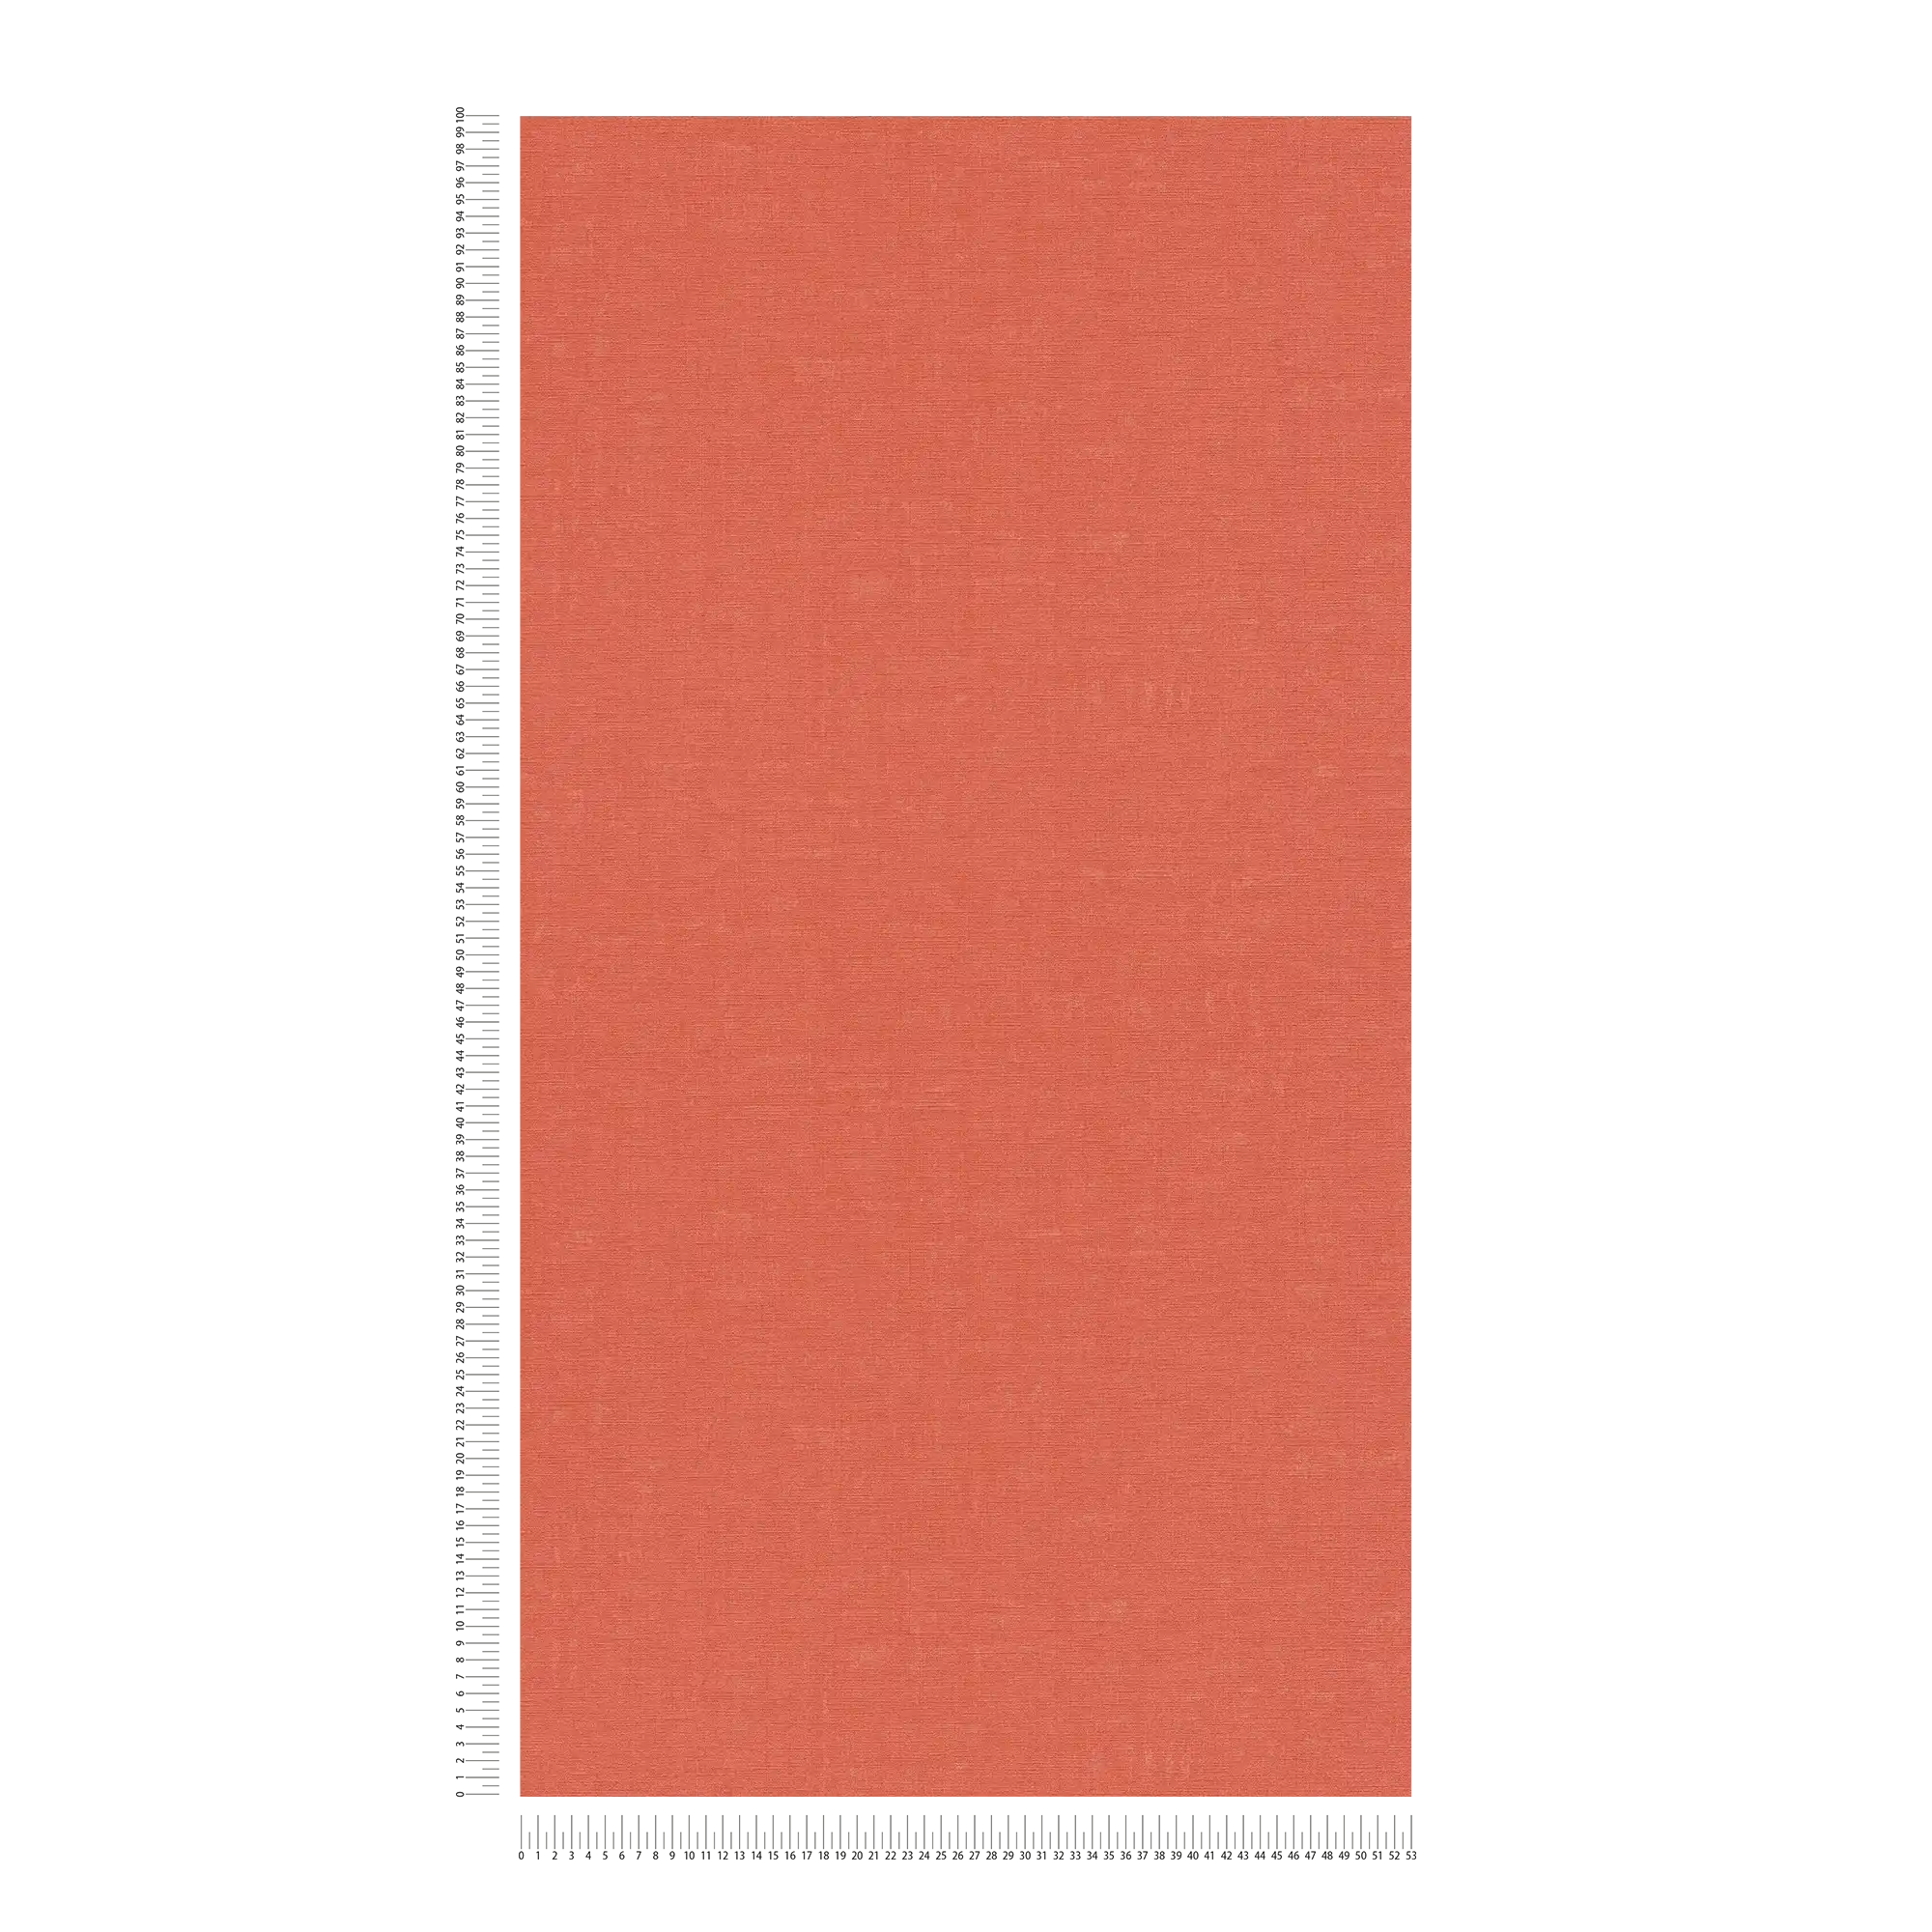             Einfarbige Tapete mit meliertem Muster – Orange, Rot
        